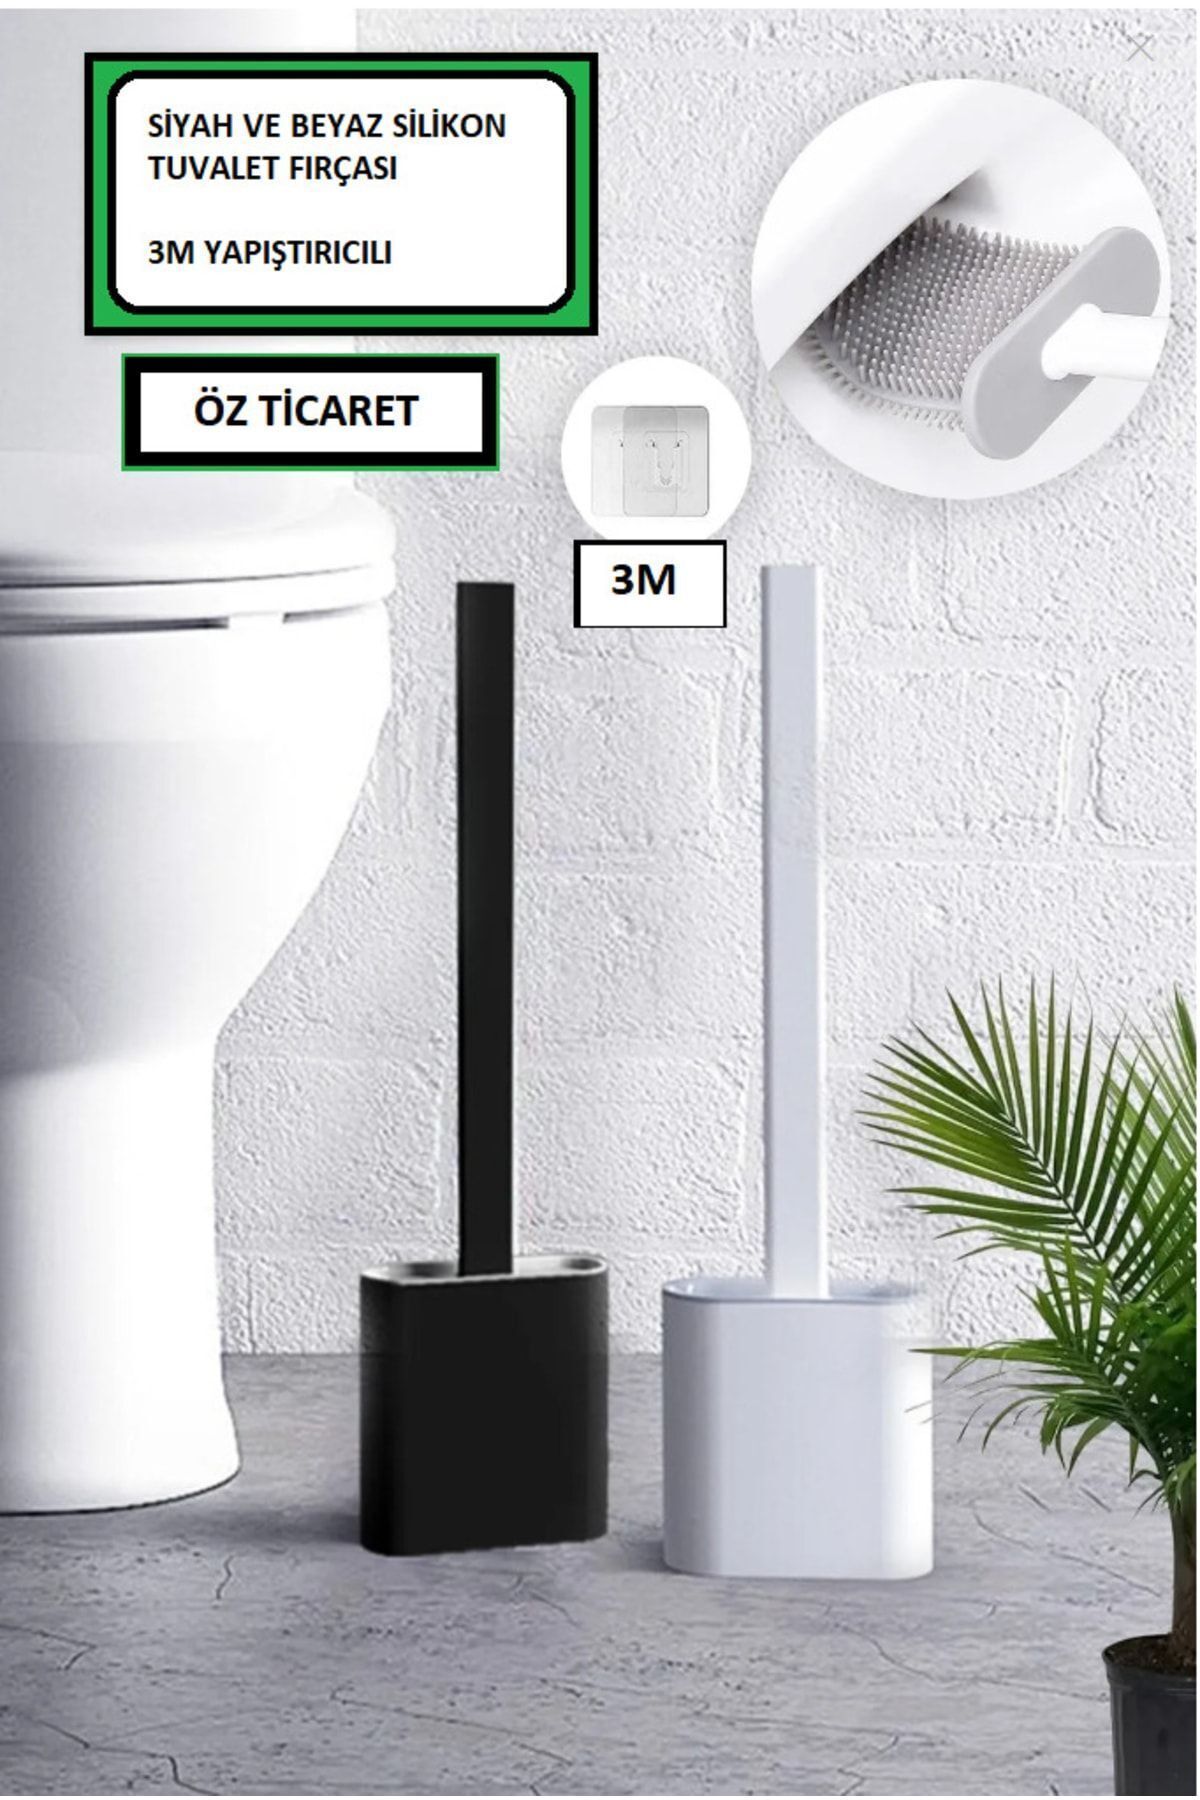 Leonsas 2li Set Beyaz Ve Siyah Renk Silikon Tuvalet Fırçası Set Bükülebilir Pratik Silikon Wc Klozet Fırçası